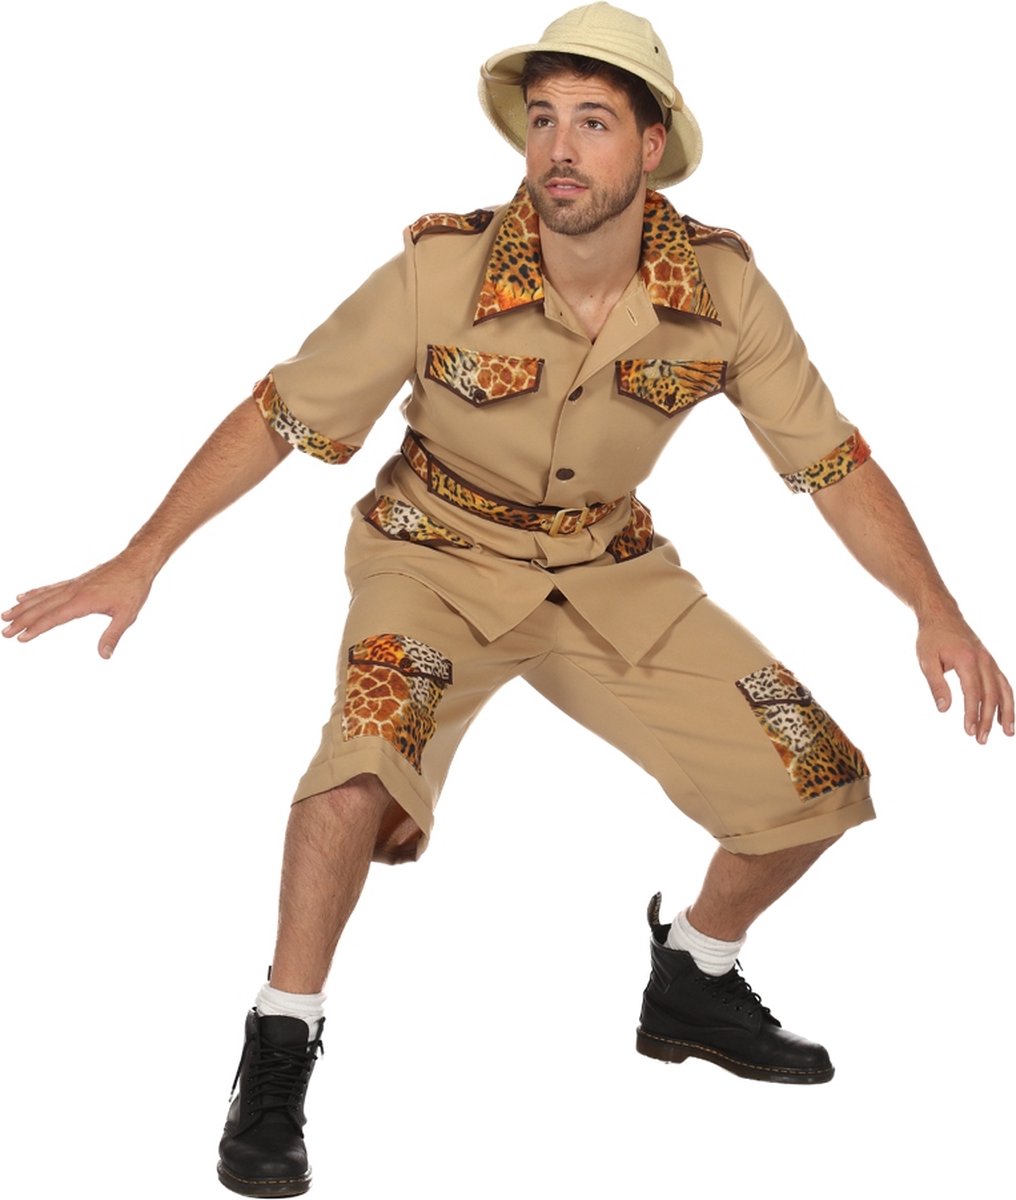 Wilbers & Wilbers - Jungle & Afrika Kostuum - De Jungle Slaapt Nooit Safari - Man - wit / beige - Maat 50 - Carnavalskleding - Verkleedkleding